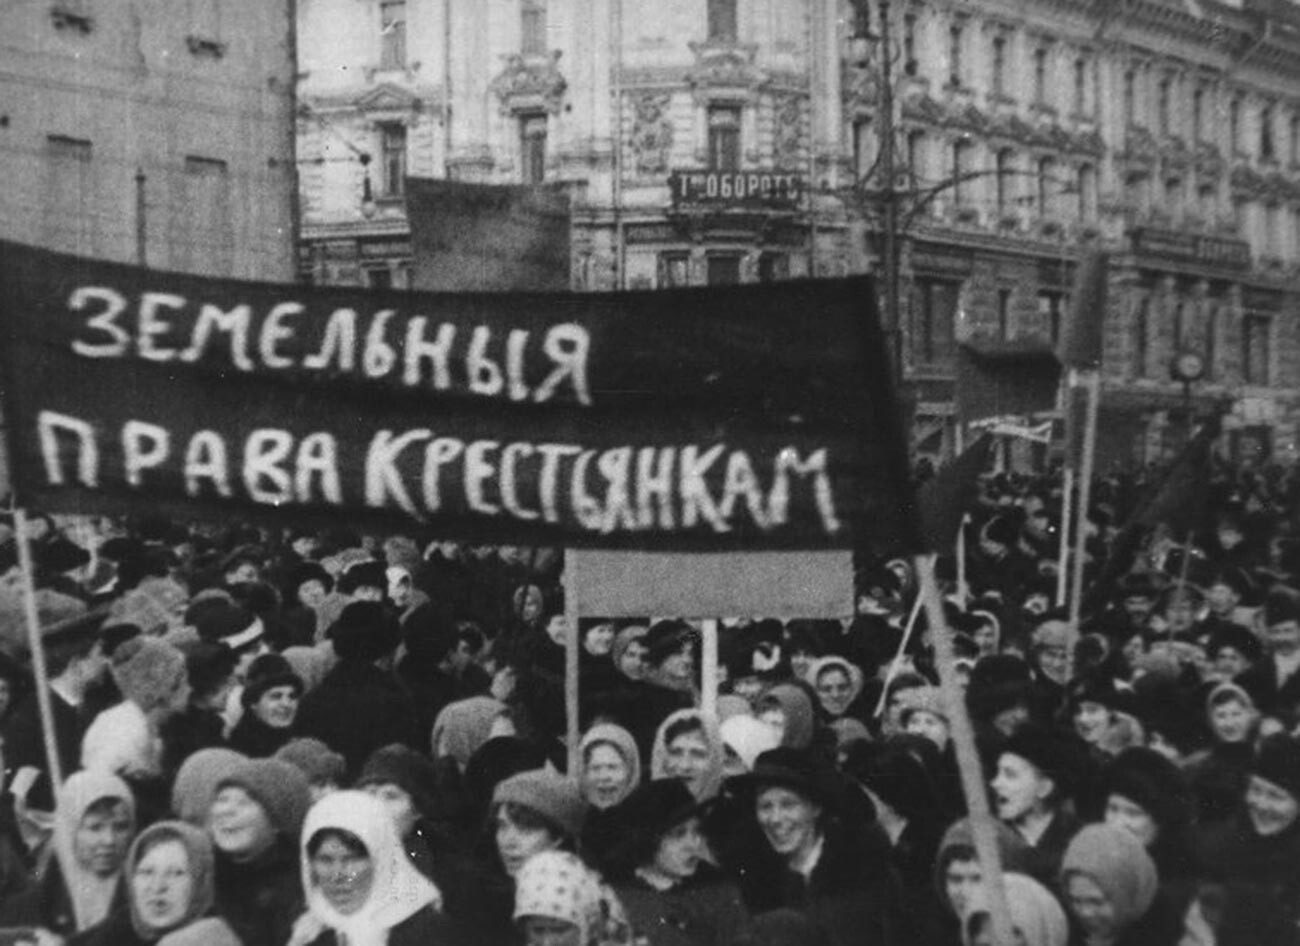 Faixa com a inscrição “Direito à terra para camponesas” em protesto em Petrogrado, em 23 de fevereiro de 1917